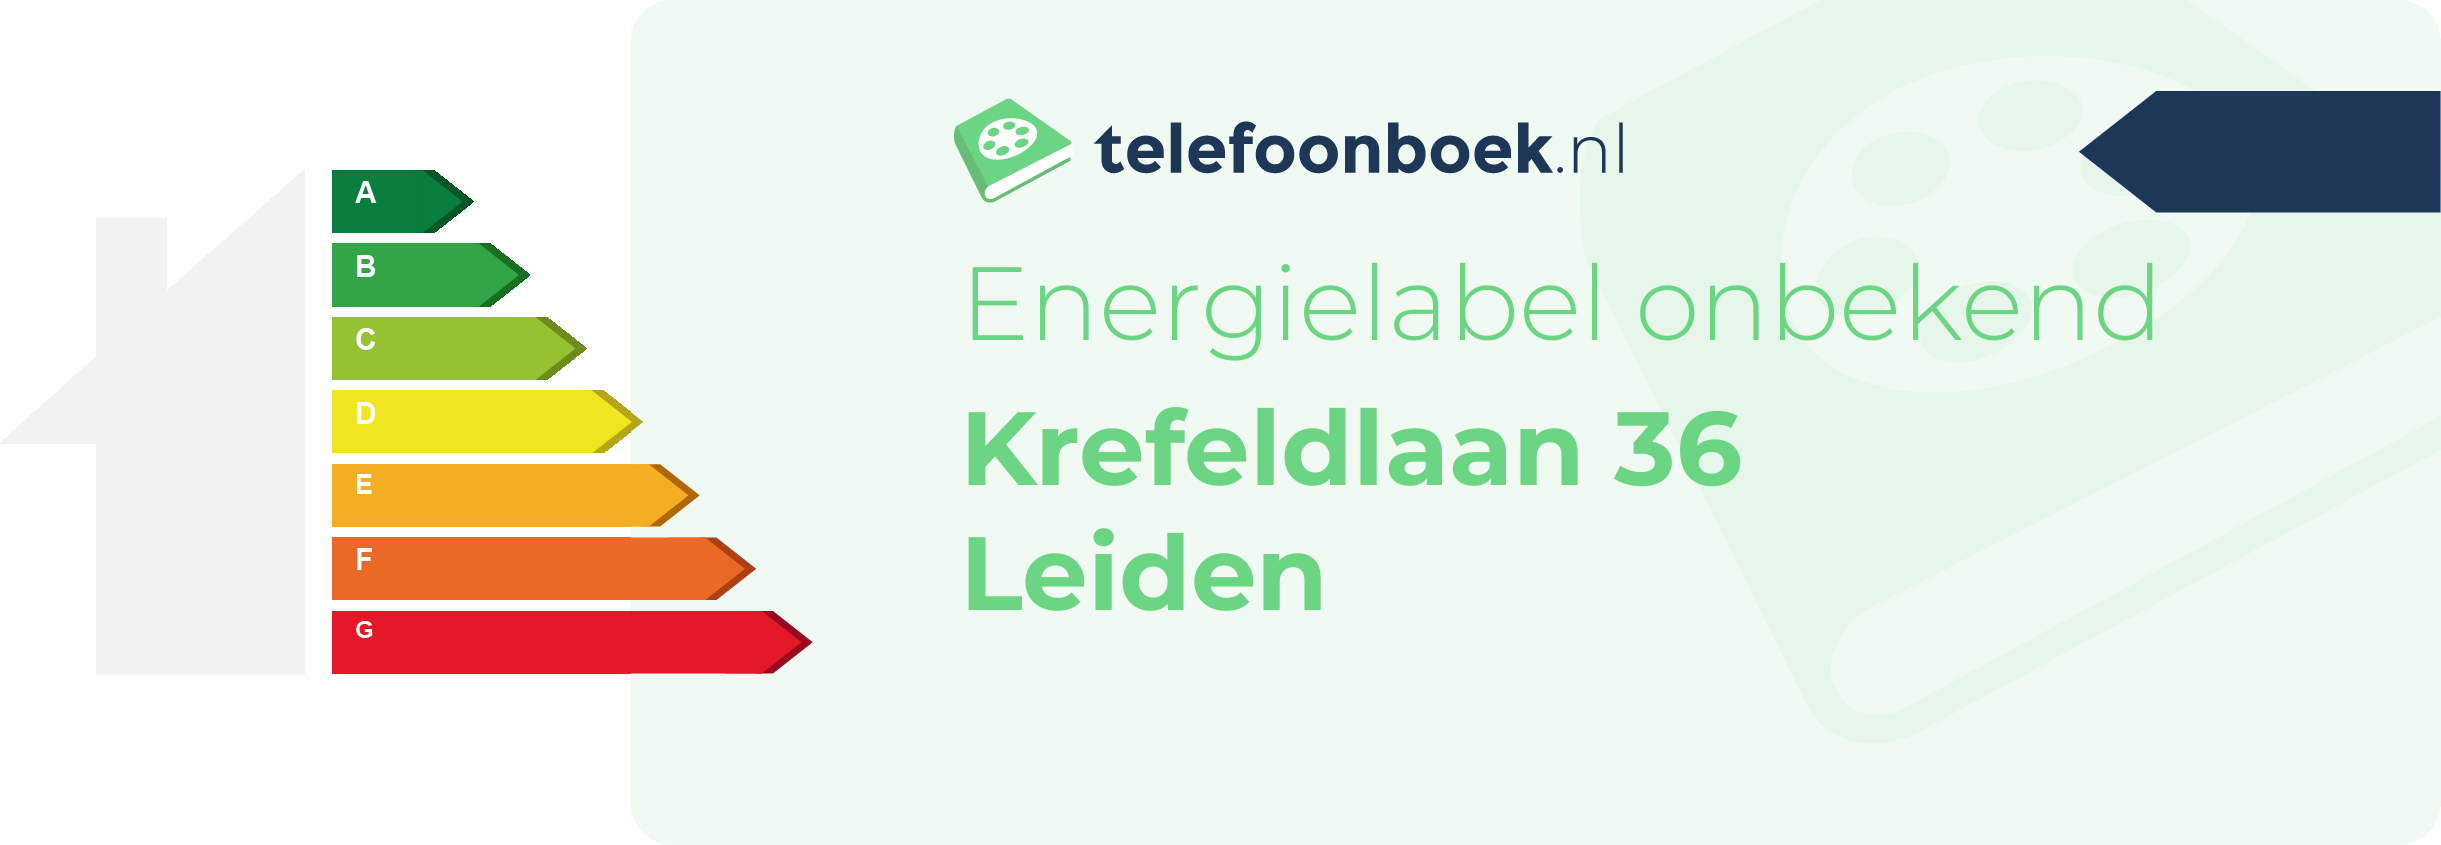 Energielabel Krefeldlaan 36 Leiden